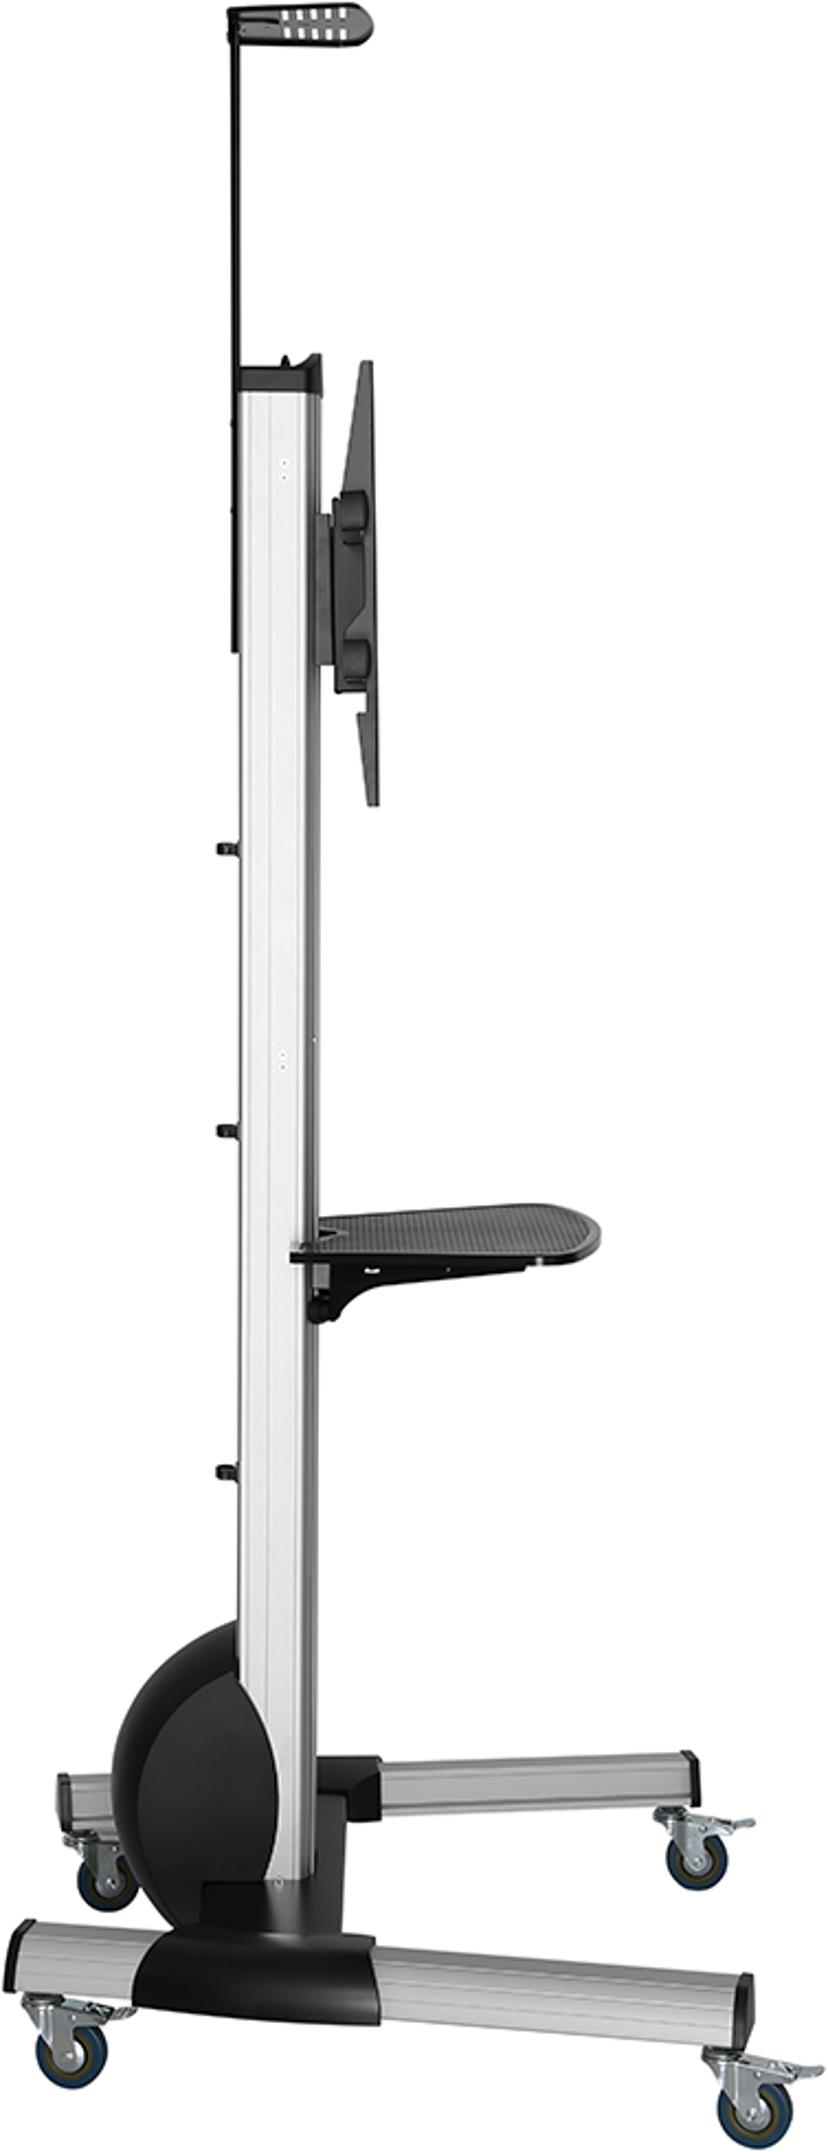 Voxicon Digital Whiteboard + Cart 65" 450cd/m² 4K UHD (2160p) 16:9